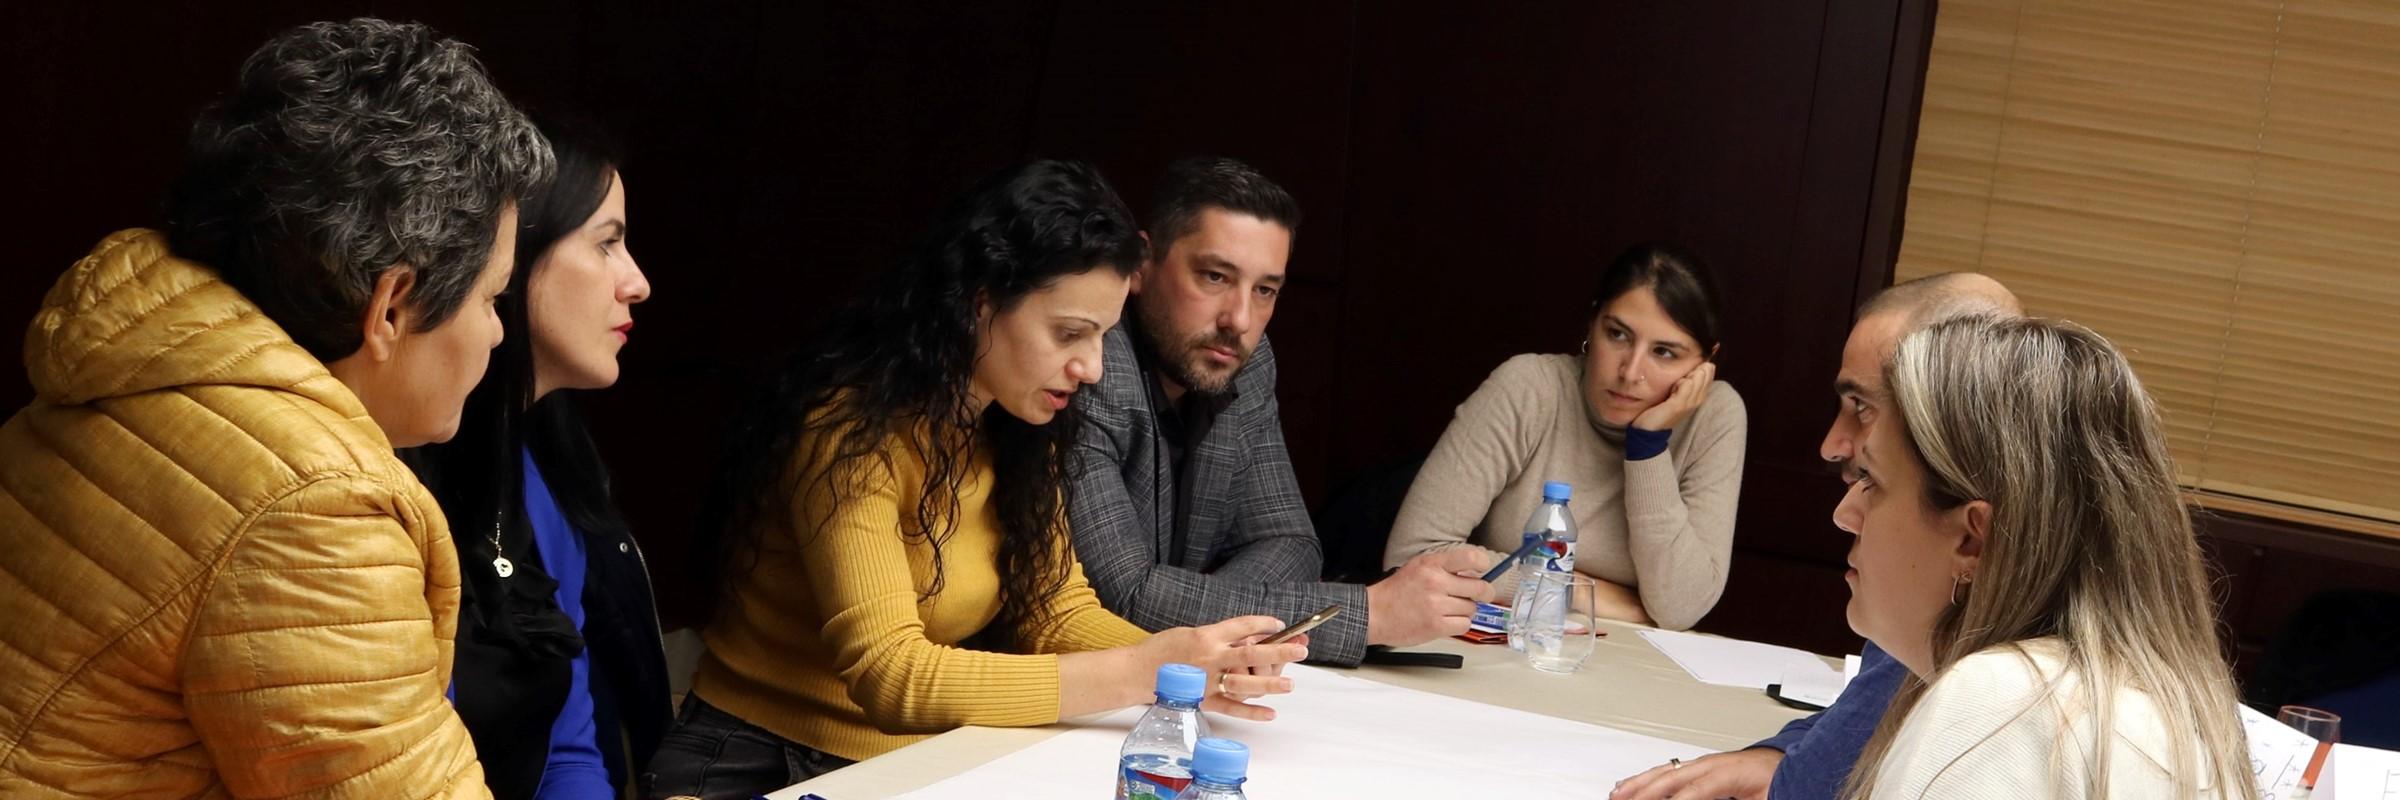 45 Profesionistë të Vijës së Parë nga Shkodra dhe Fieri u Trajnuan mbi Pasojat e Abuzimit Seksual tek Fëmijët